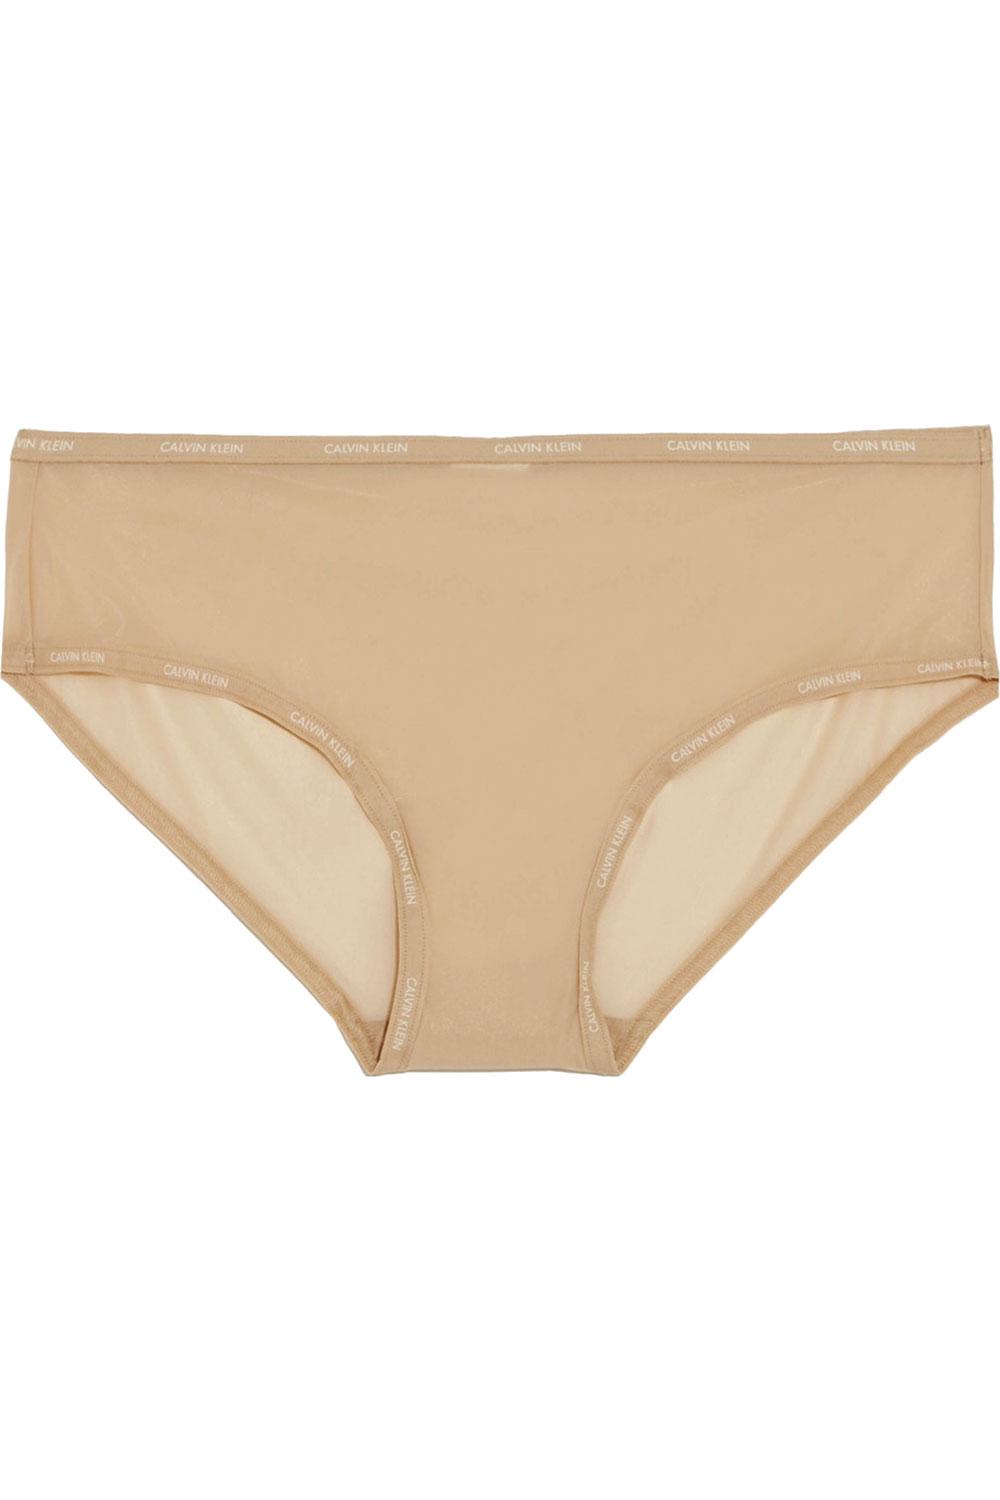 Slip (29,49 euro), Calvin Klein Underwear, calvinklein.be